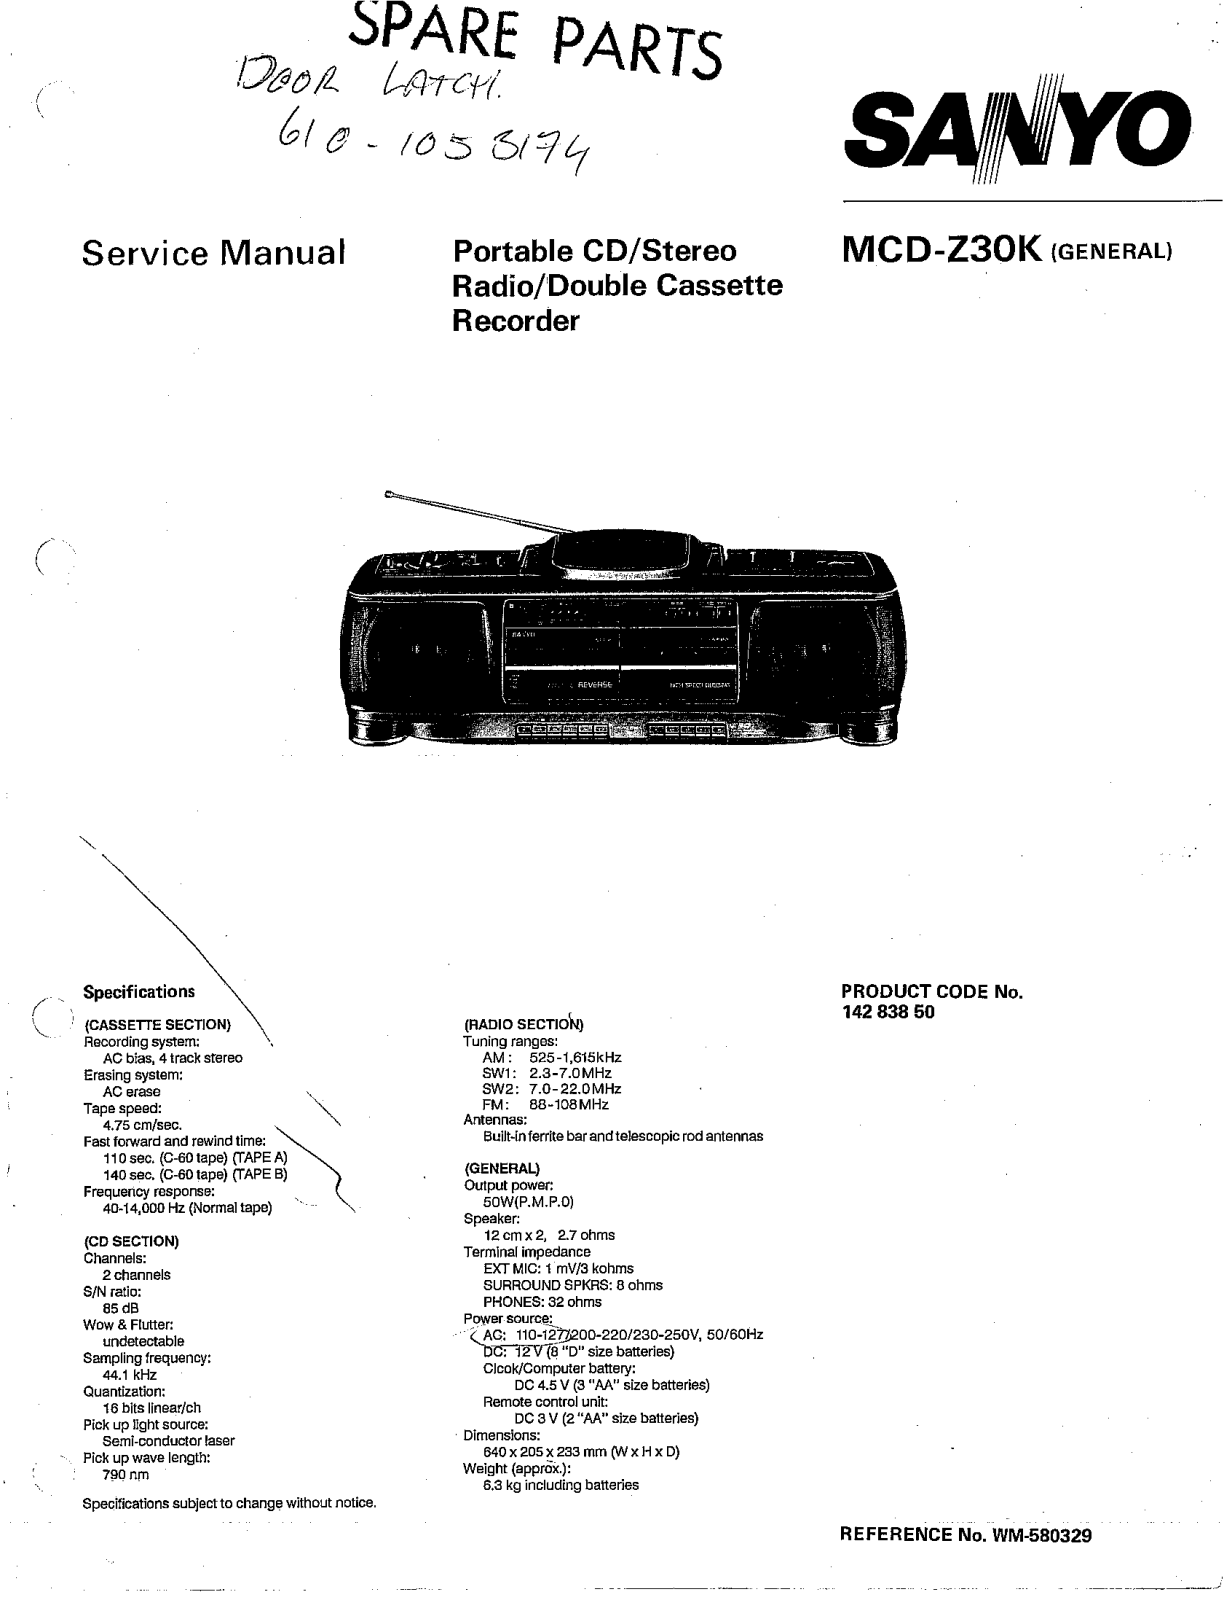 Sanyo MCDZ-30-K Service manual